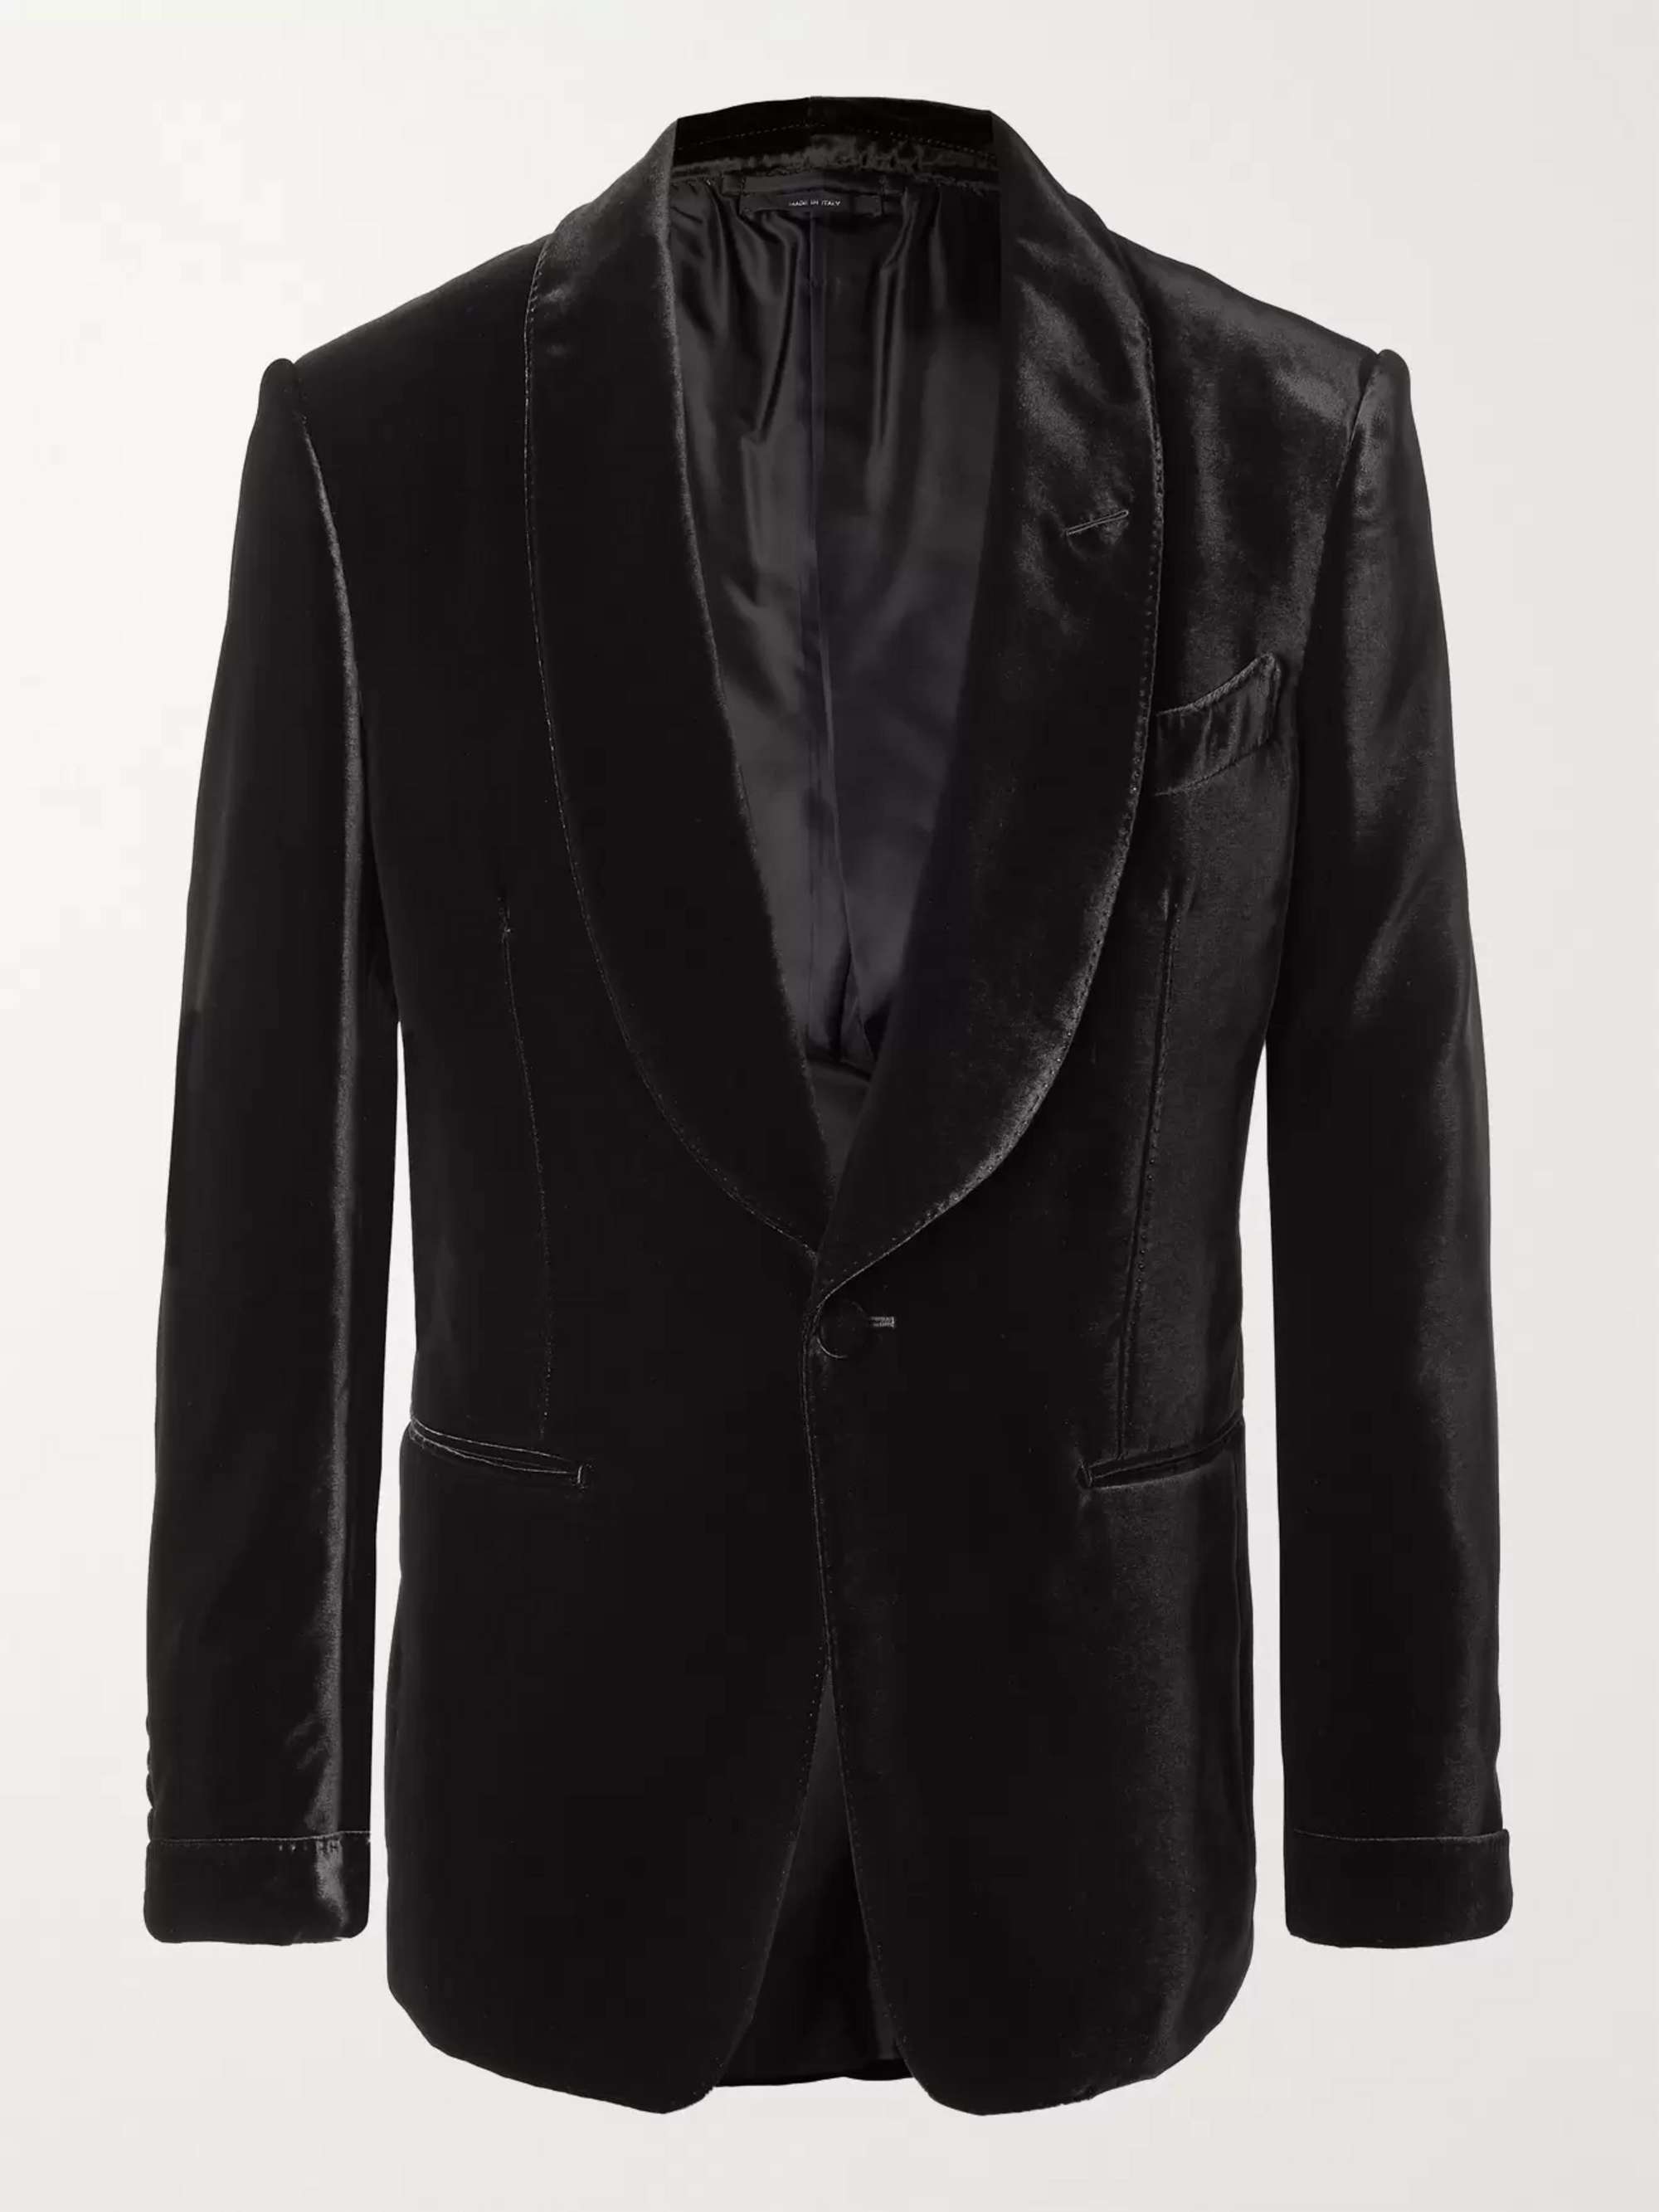 TOM FORD Shelton Slim-Fit Shawl-Collar Velvet Tuxedo Jacket